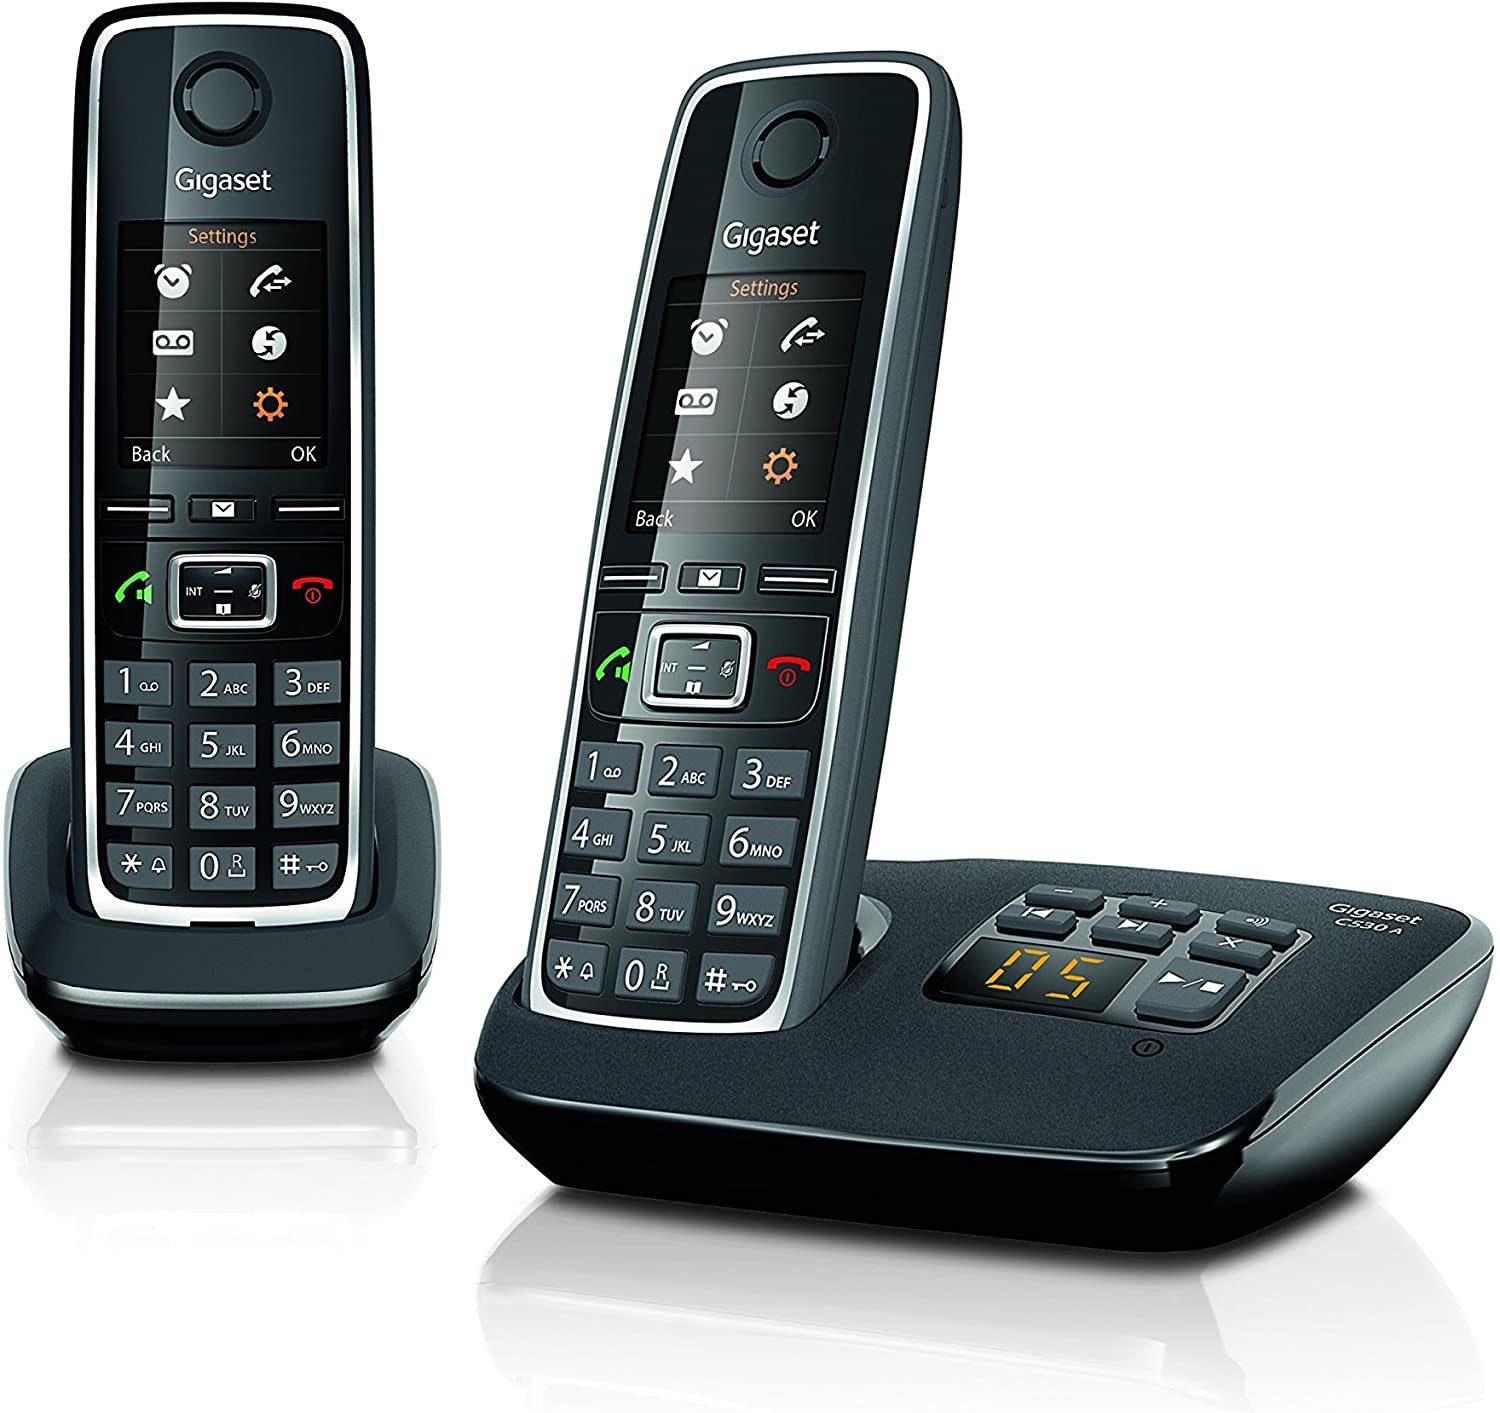 (Mobilteile: Duo 2), mit C530A Freisprechen Gigaset Gigaset Babyphone DECT Festnetz-Telefon schnurlos & Gegensprechen, Anrufbeantworter DECT-Telefon